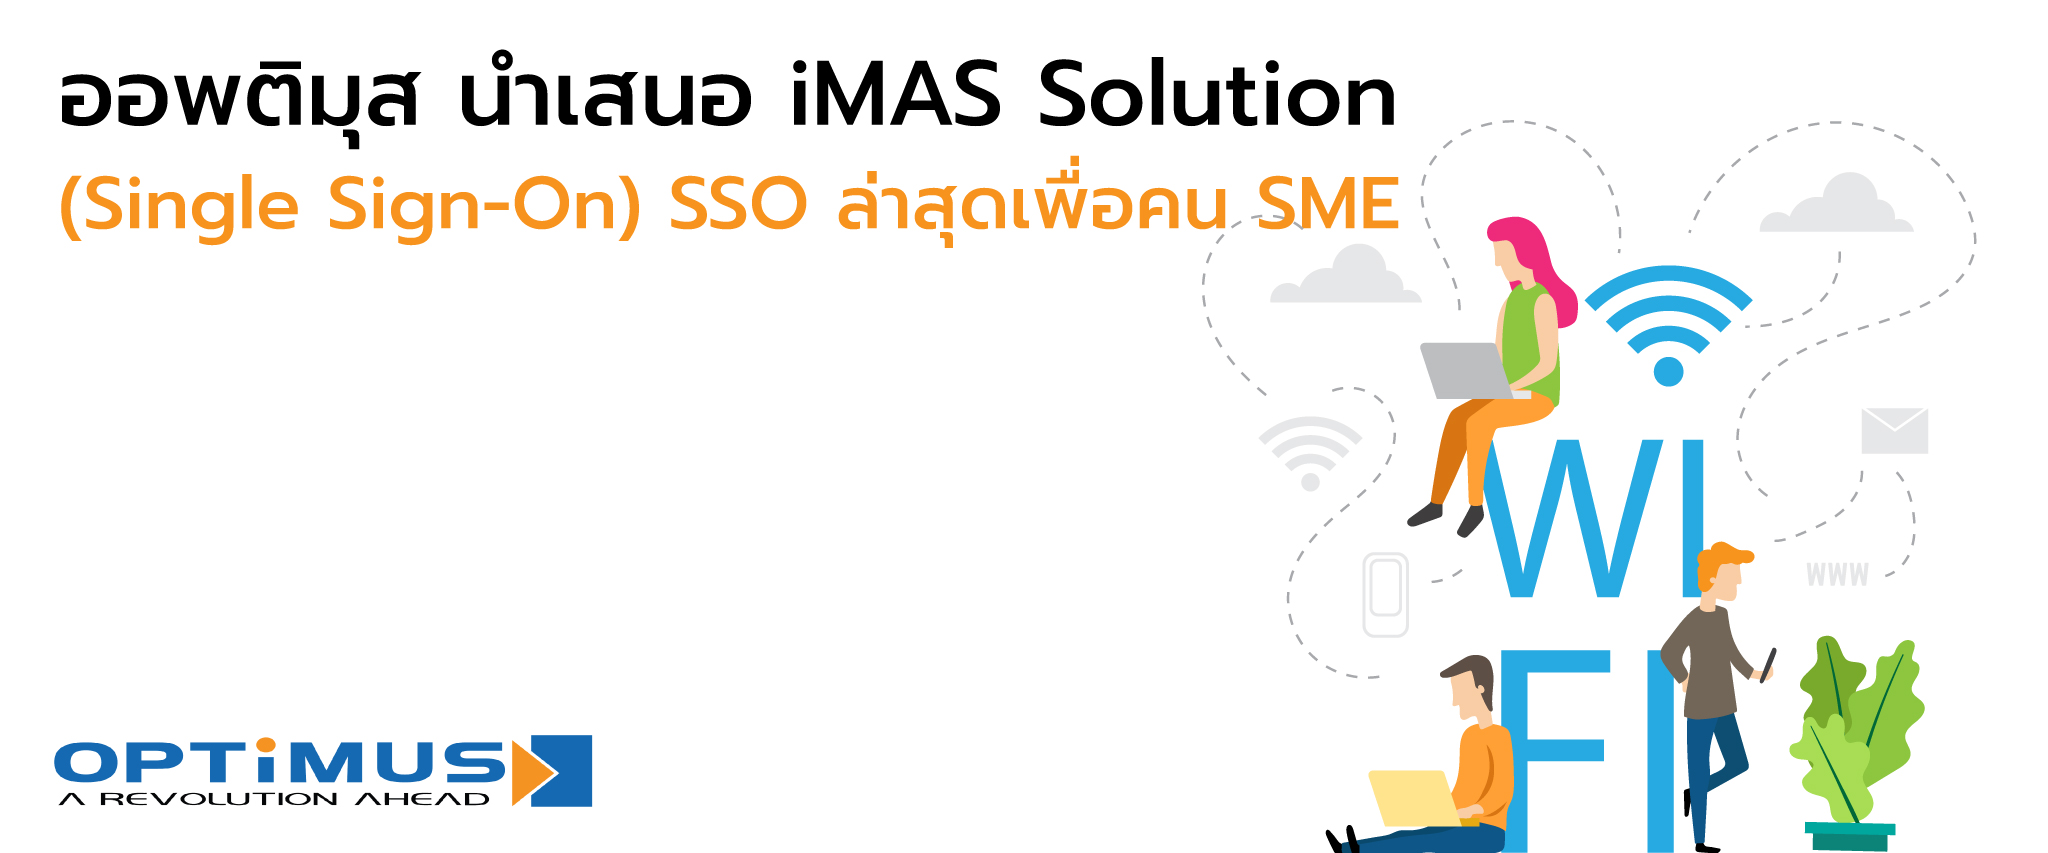 ออพติมุส นำเสนอ iMAS โซลูชั่น (Single Sign-On) SSO ล่าสุดเพื่อคน SME